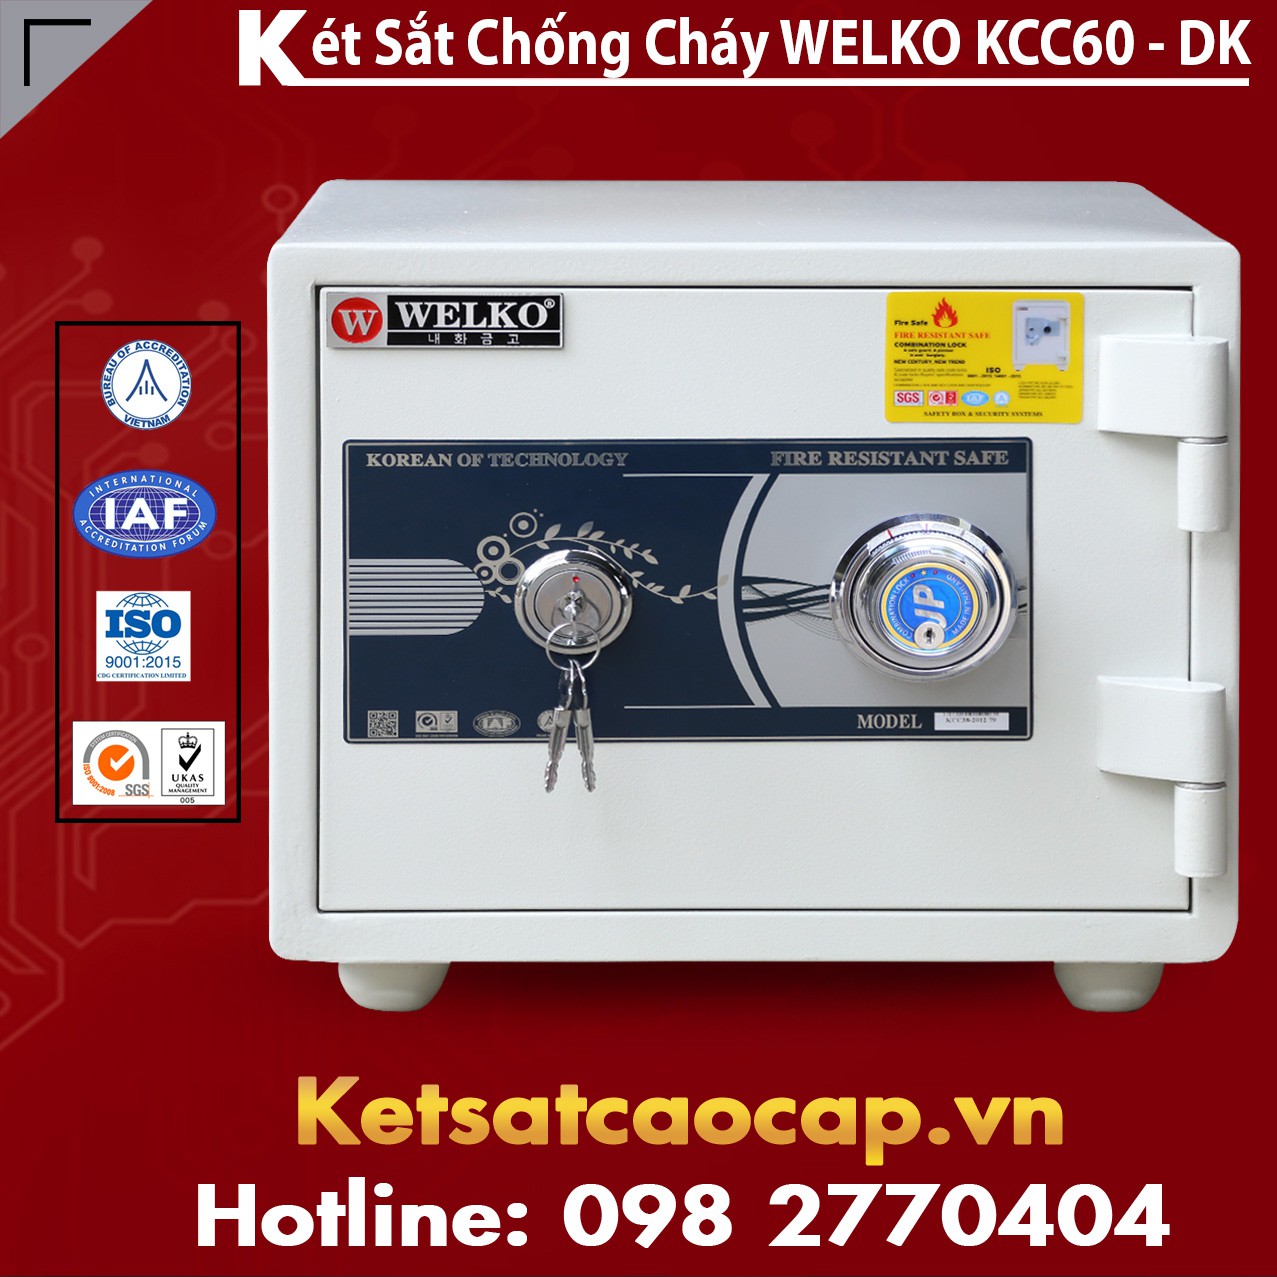 Két Sắt Sài Gòn KCC60 - DK